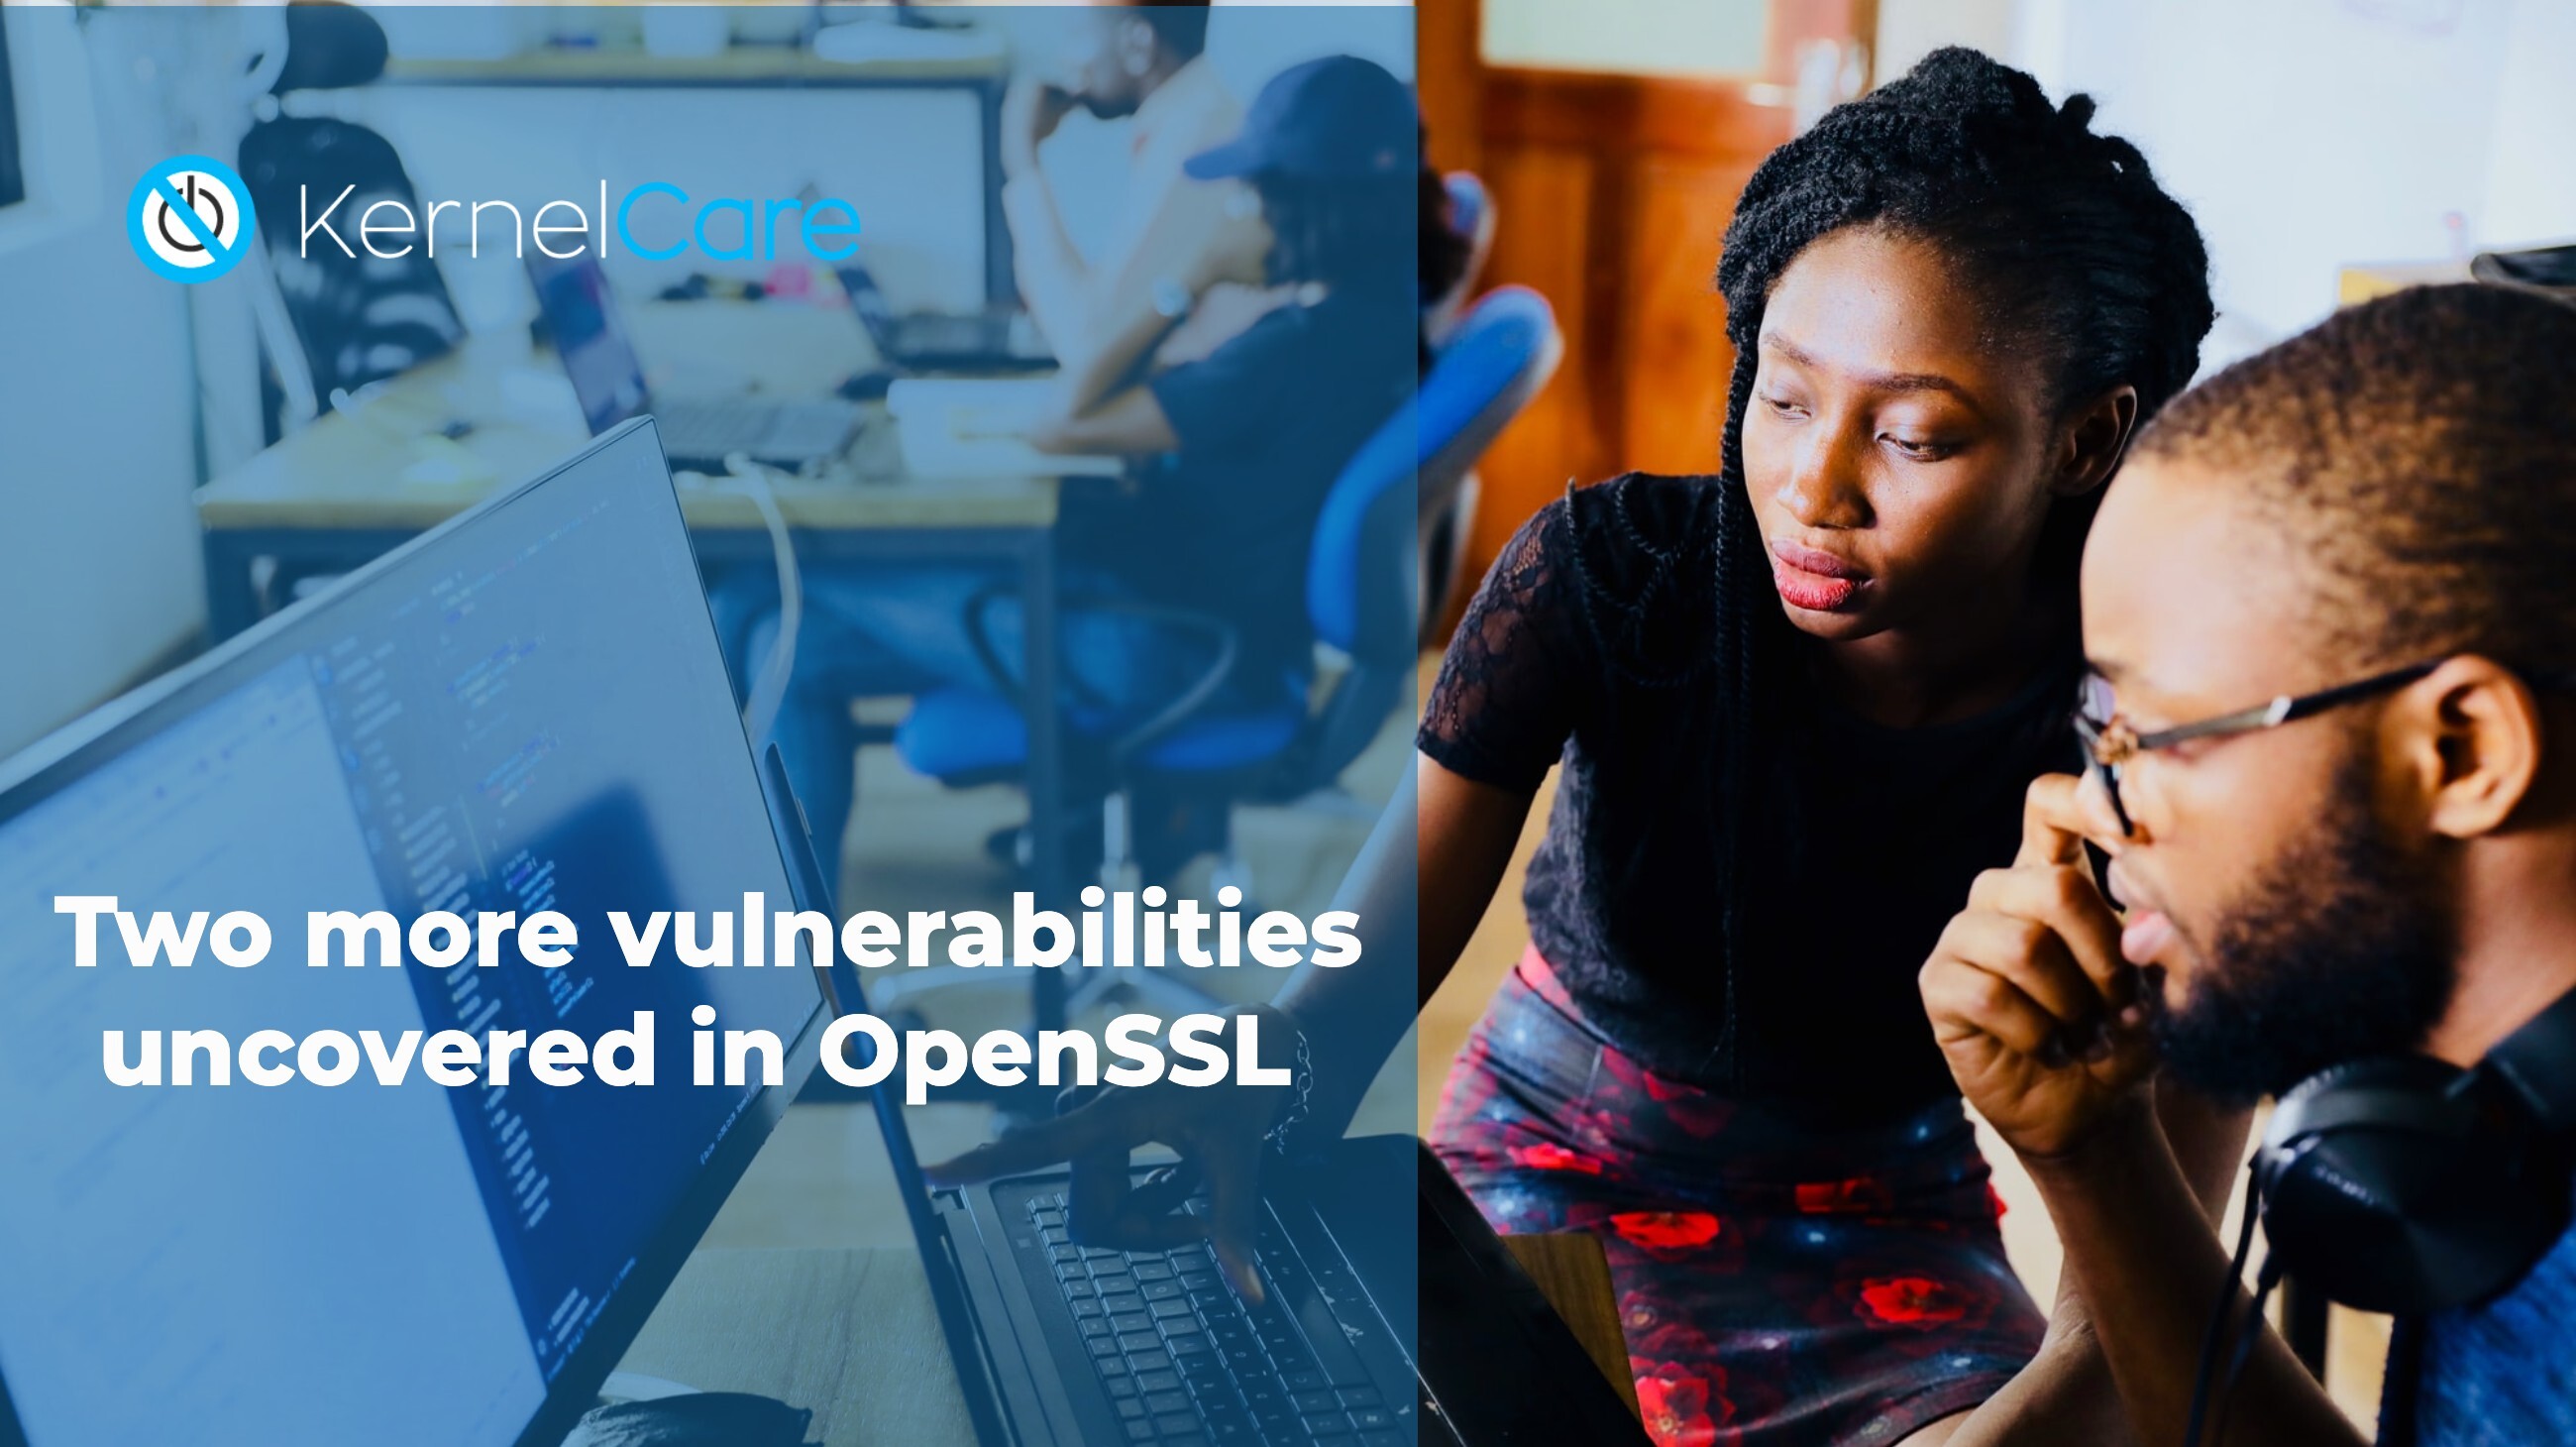 Descubiertas otras dos vulnerabilidades en OpenSSL